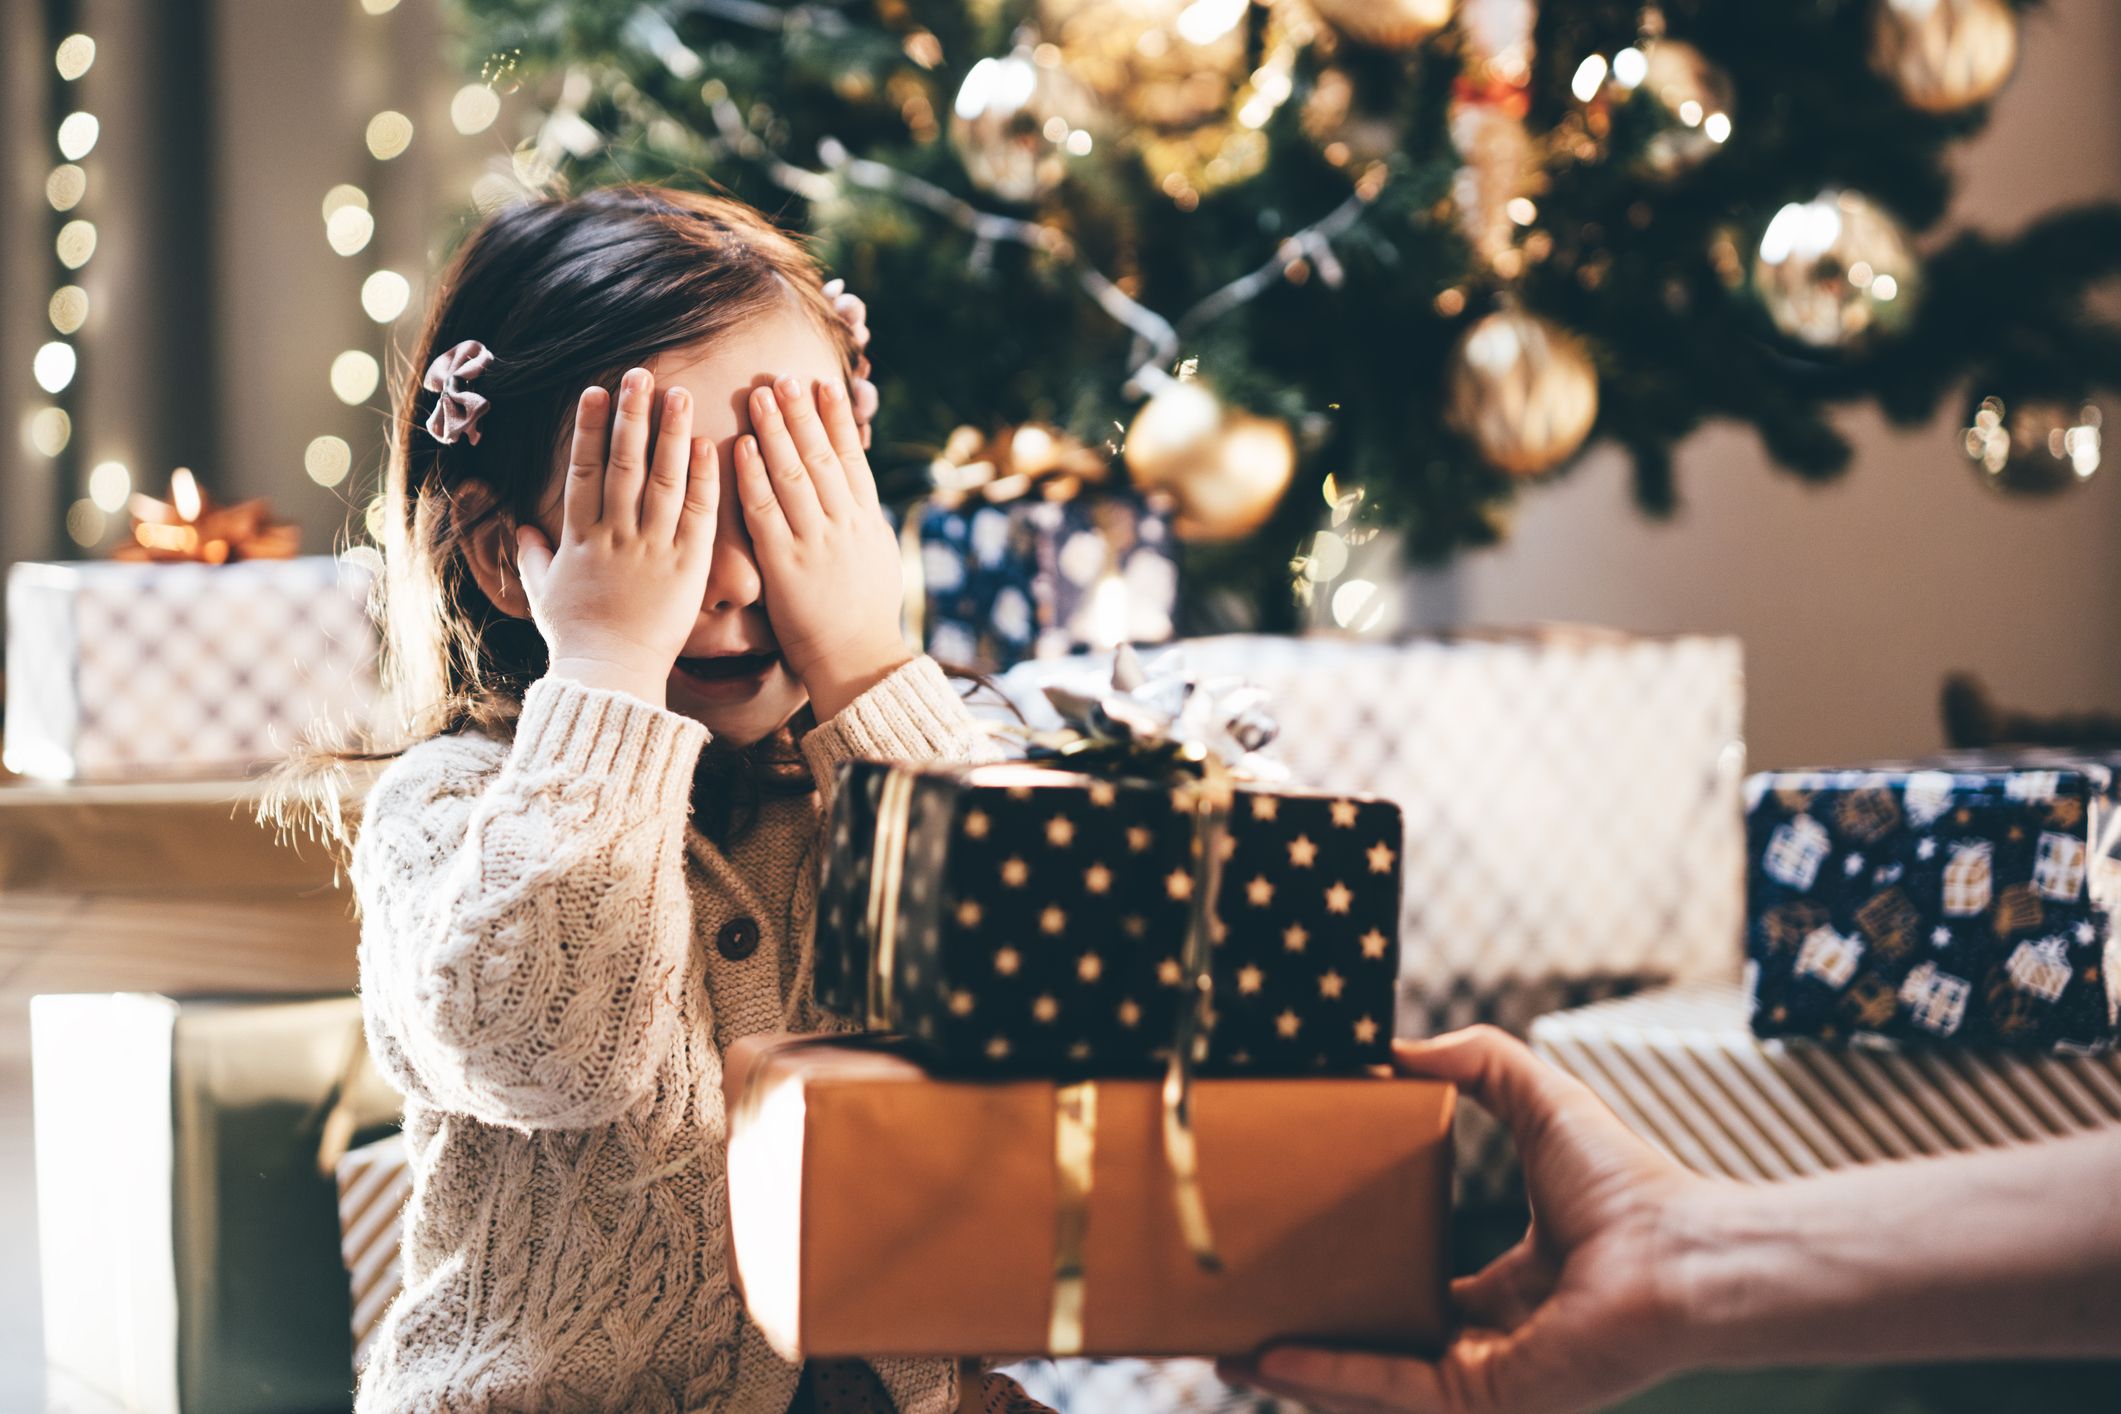 Regali di Natale per bambini: cosa regalare se hanno da 1 a 12 anni - fem